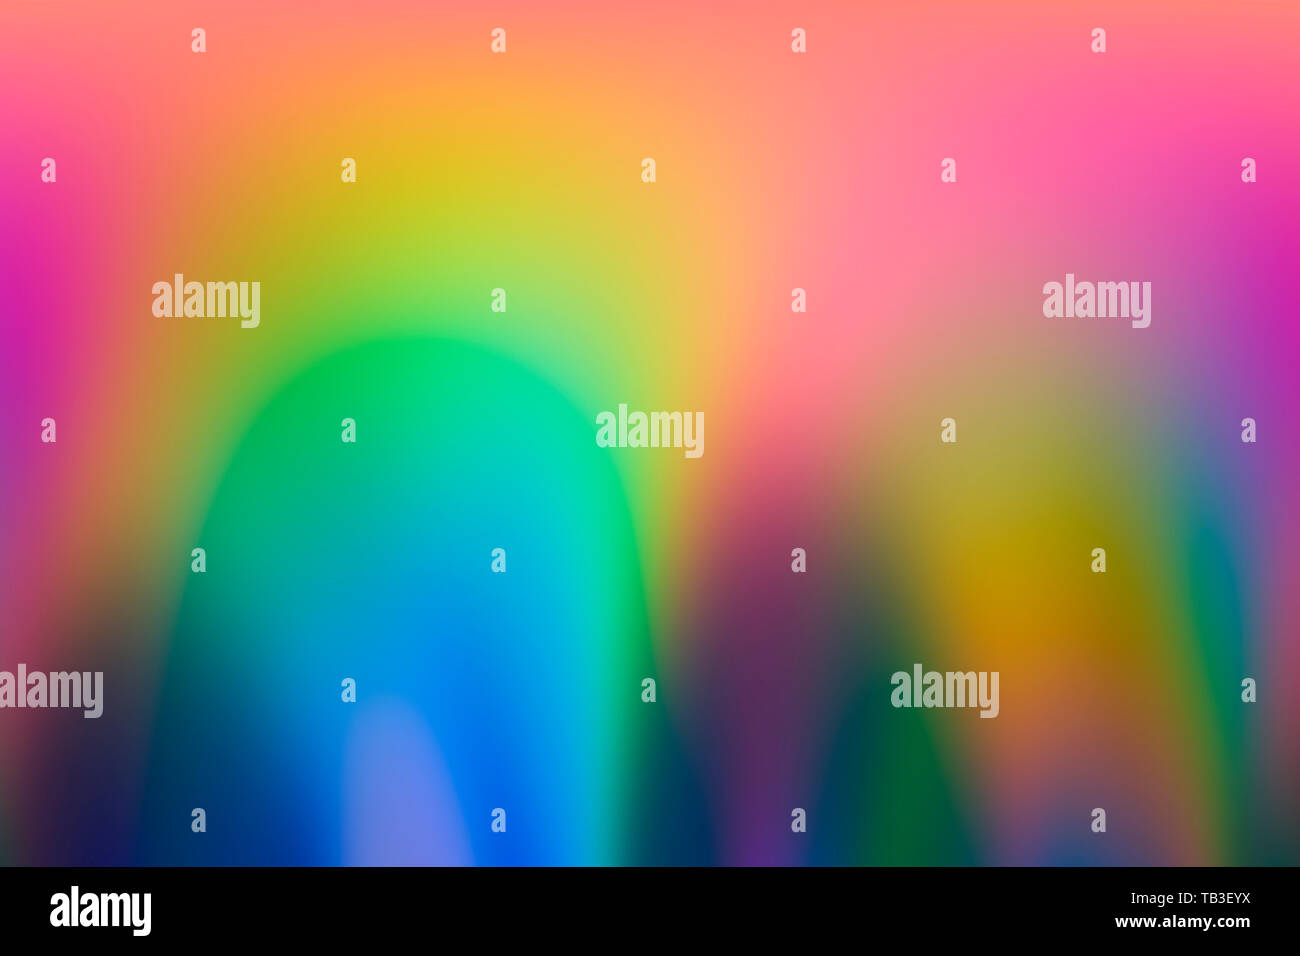 Spektrum abstrakt vaporwave holographische Hintergrund, trendigen bunten Kulisse in Pastelltönen Neon farbe. Für kreative Design Cover, CD, Plakat, Buch, Druckeni Stockfoto